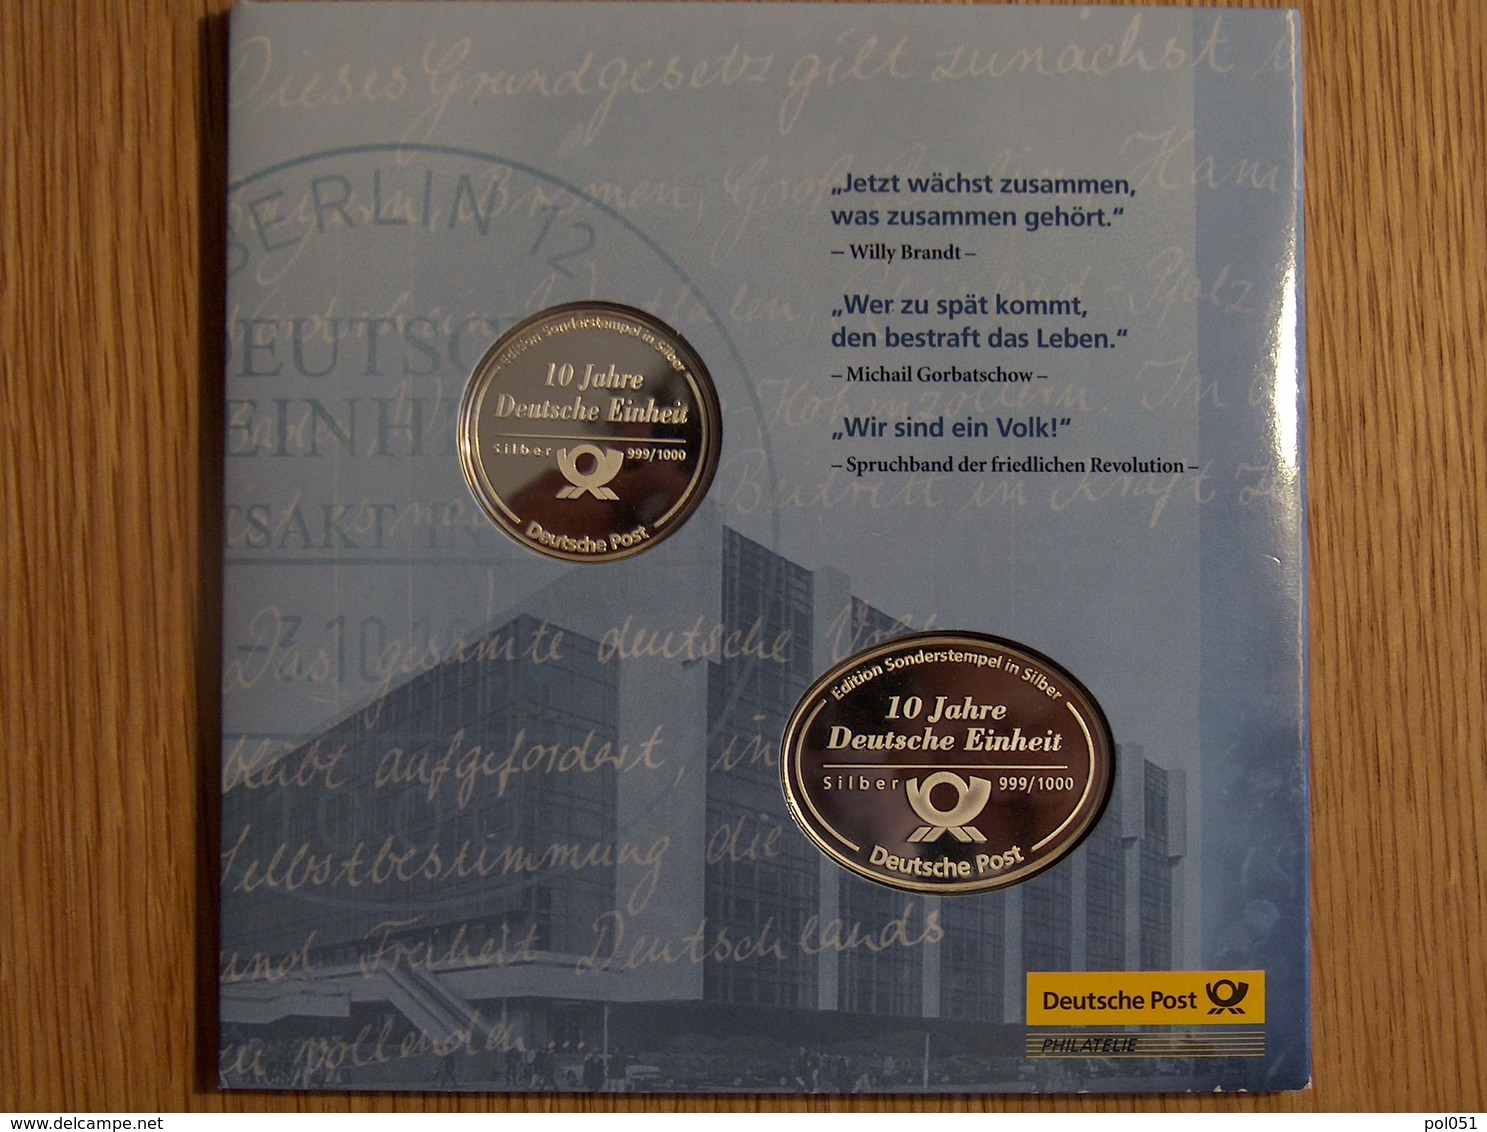 Die Sonderstempel Der Deutschen Post Oktober 1990 Argent Silver - Verzamelingen